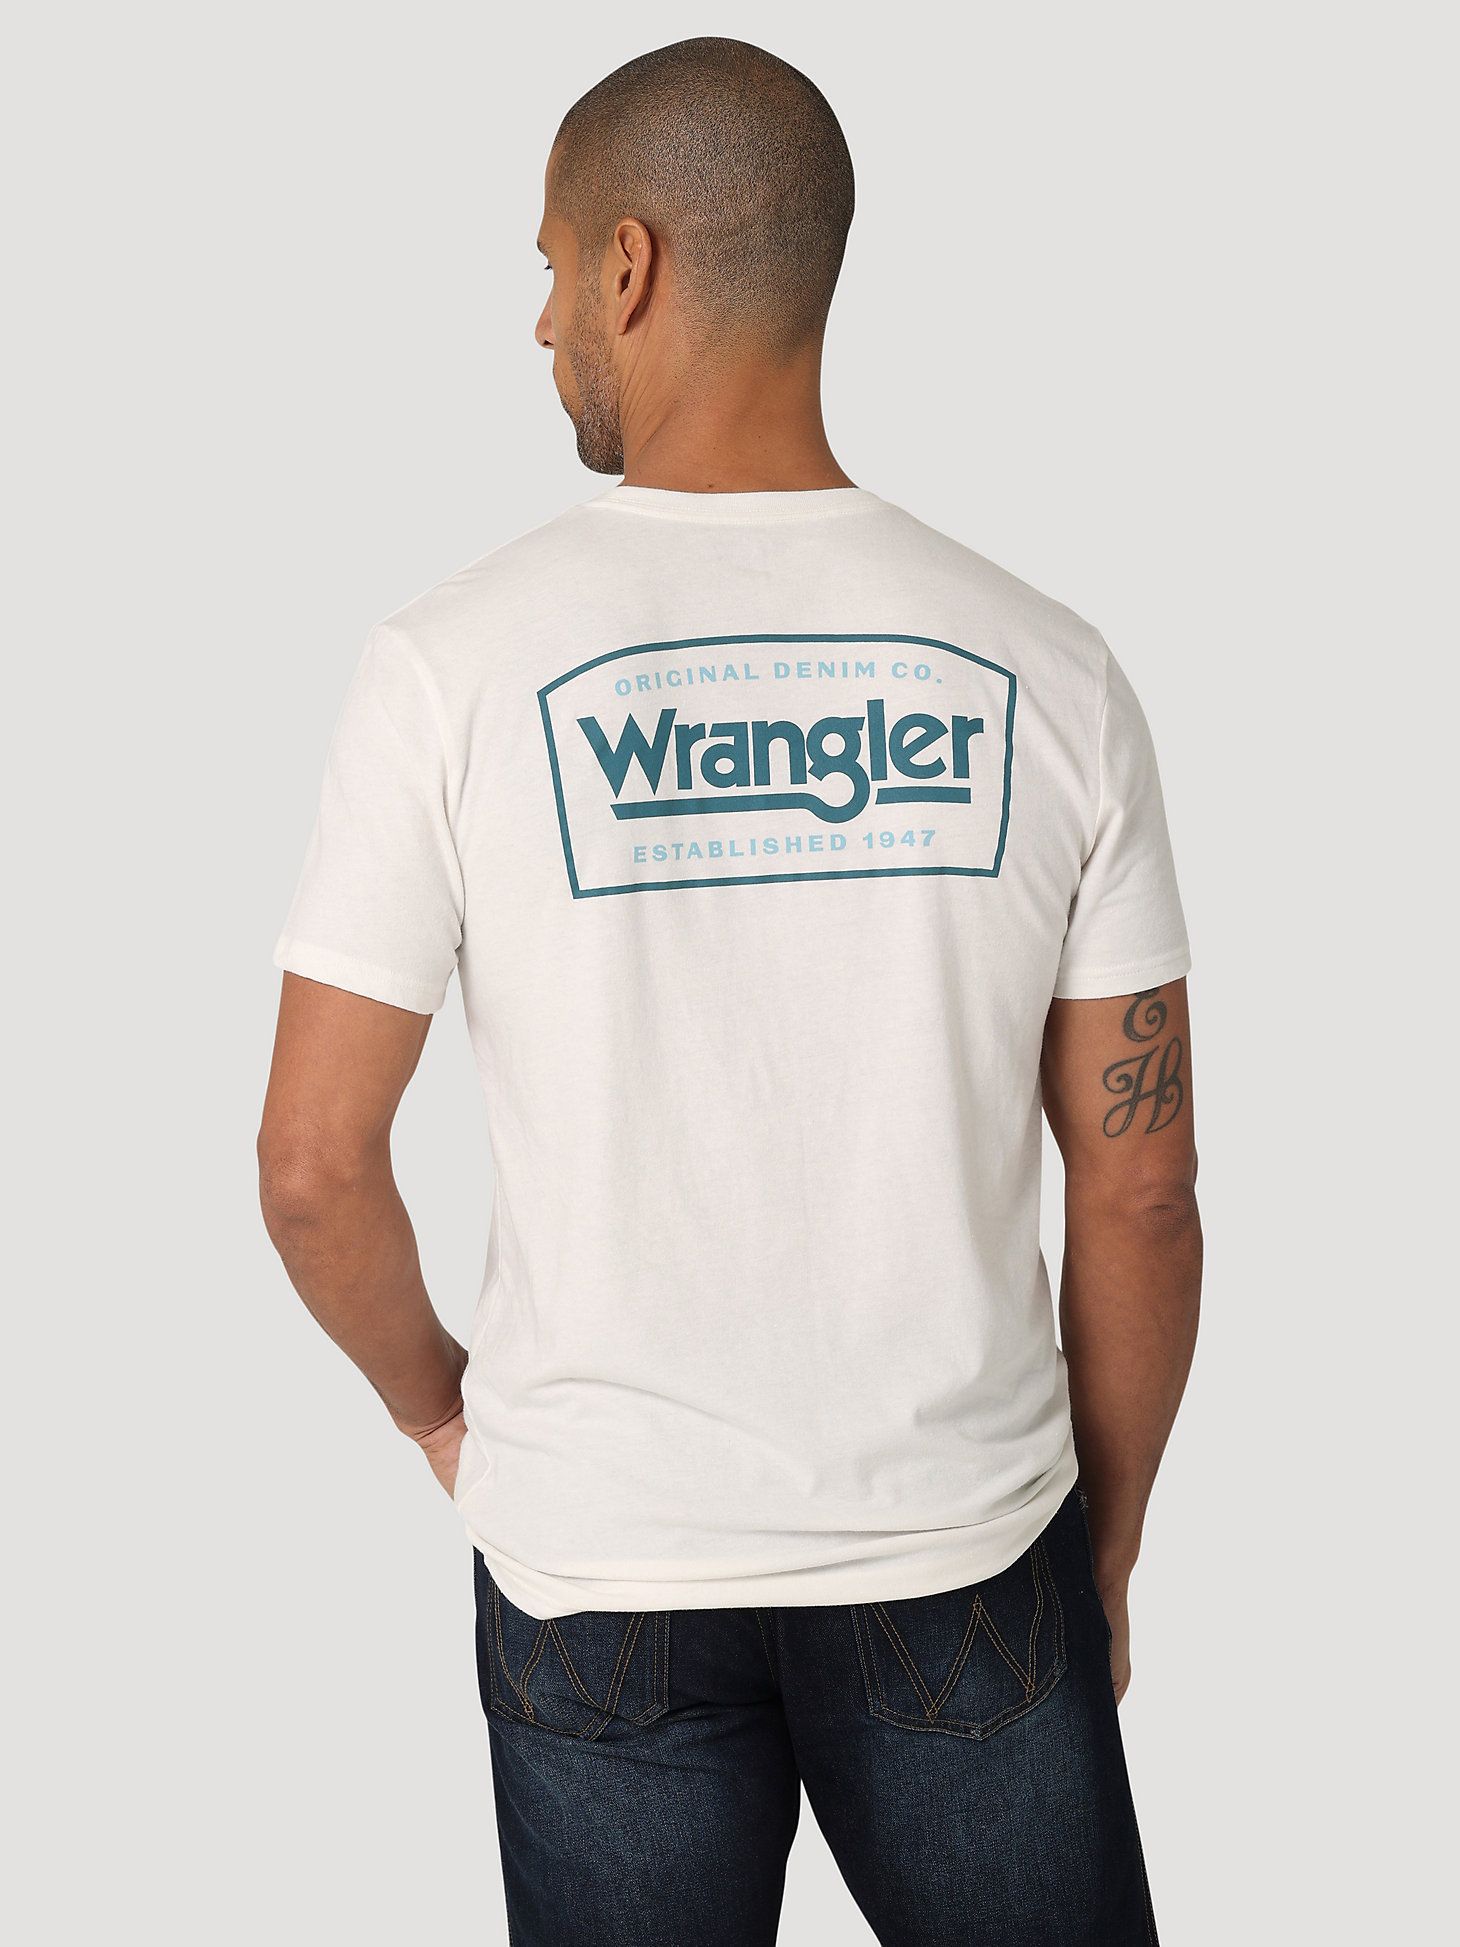 Wrangler® Original Denim Co T-Shirt in Marshmallow Heather | Wrangler